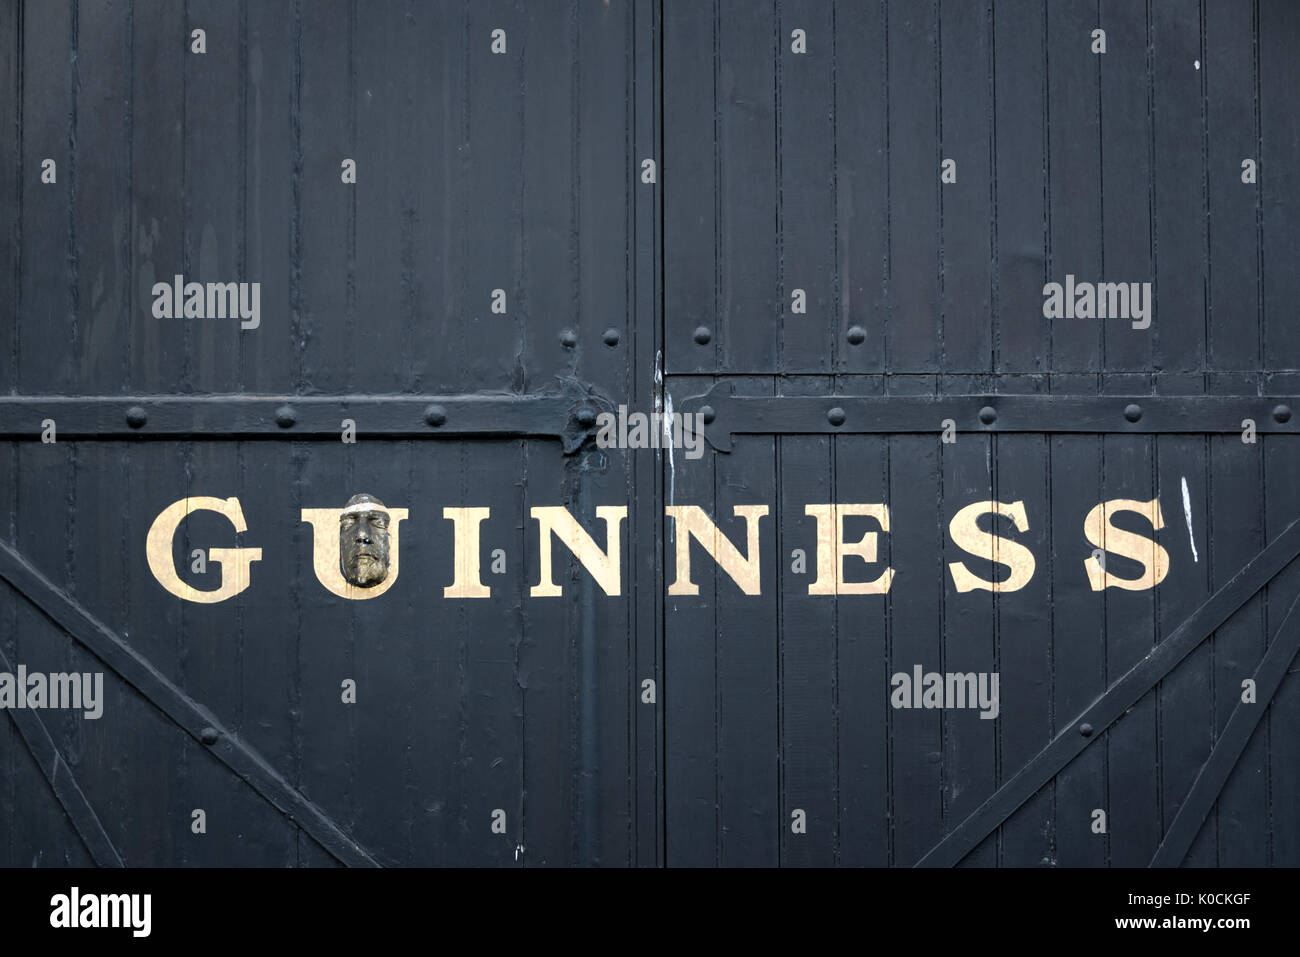 Dublino, Irlanda - 14 agosto: porta presso il Magazzino Guinness Brewery. Il Magazzino Guinness è una popolare attrazione turistica di Dublino Foto Stock